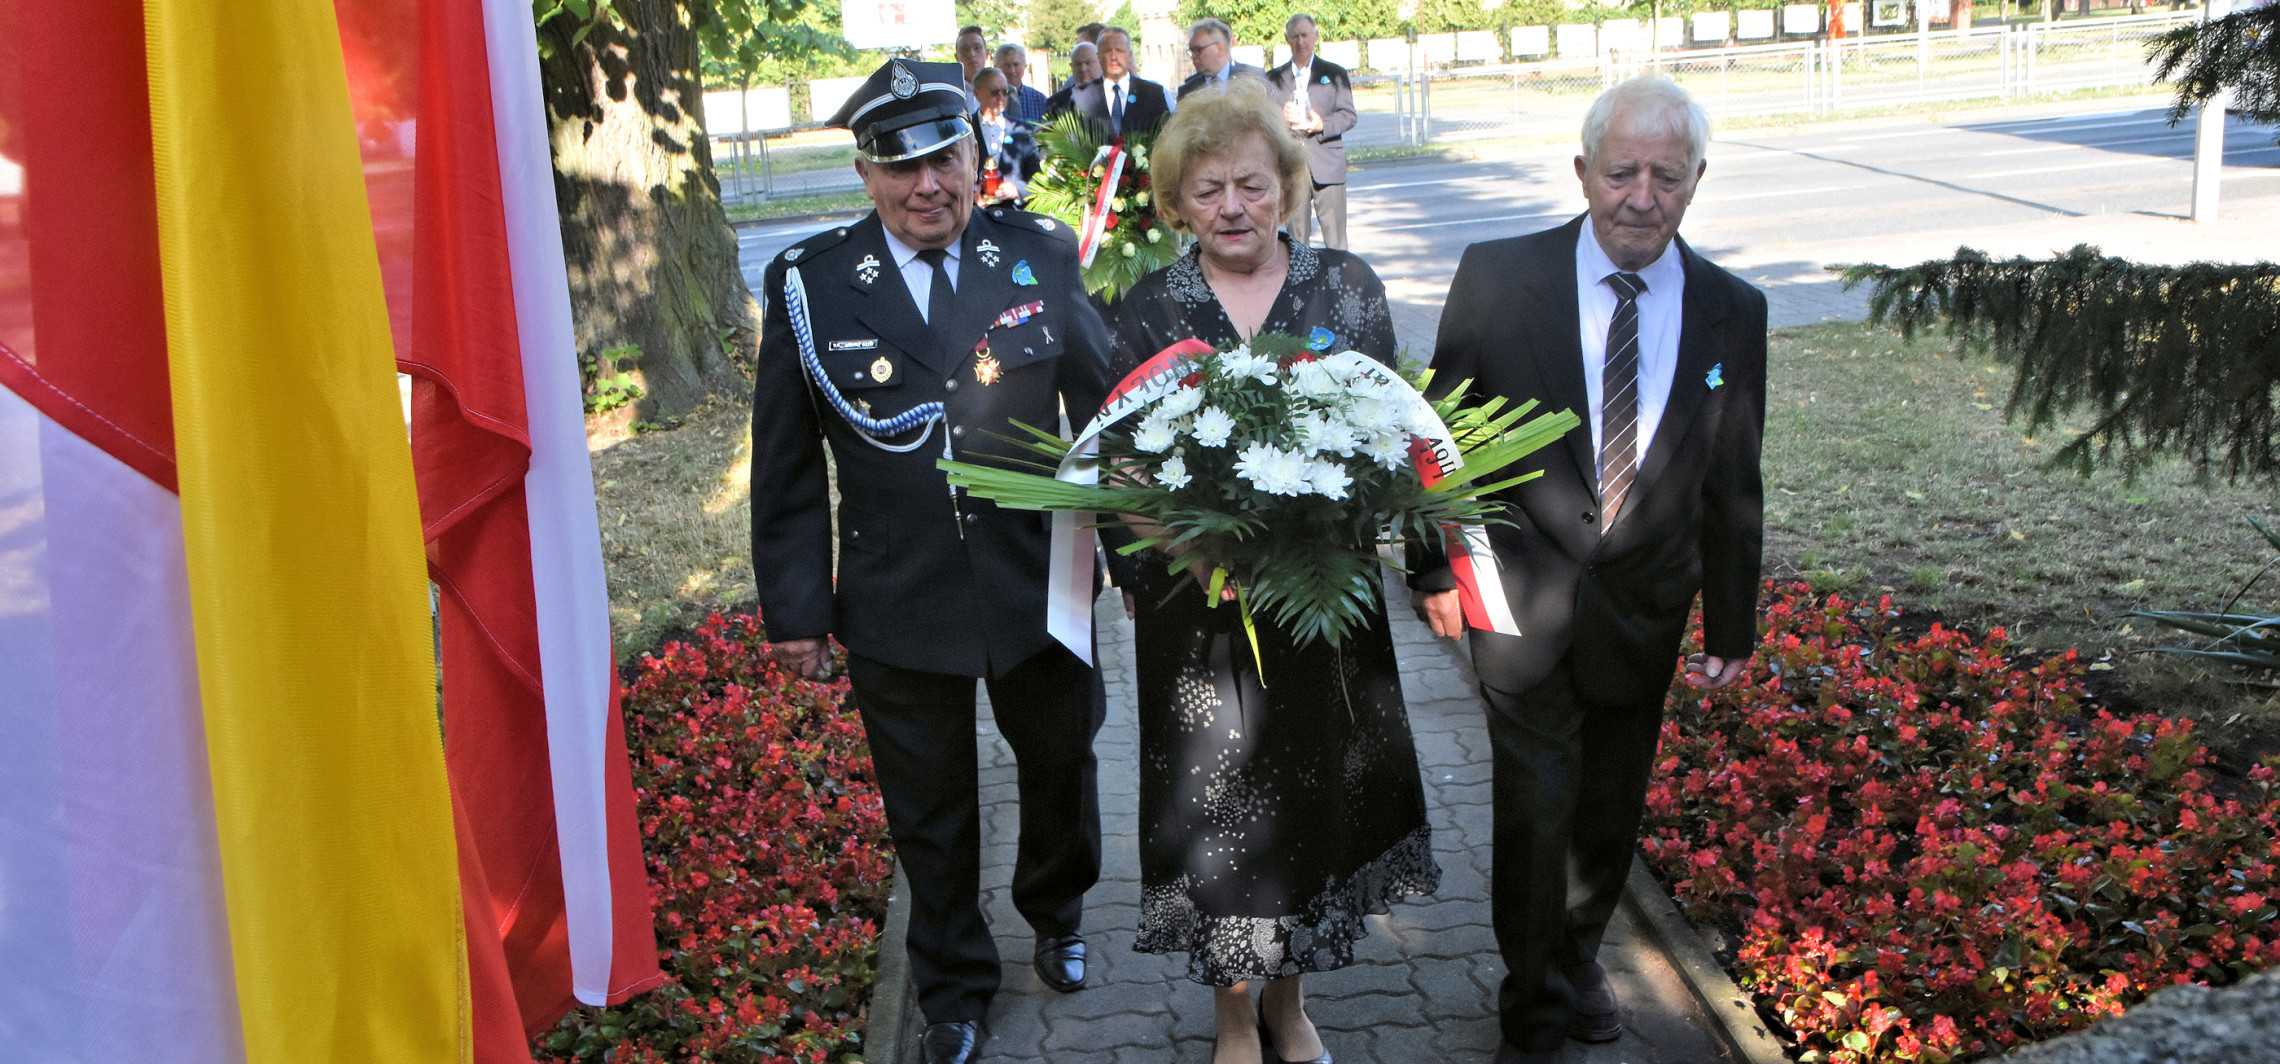 Inowrocław - W Inowrocławiu upamiętniono ofiary ludobójstwa